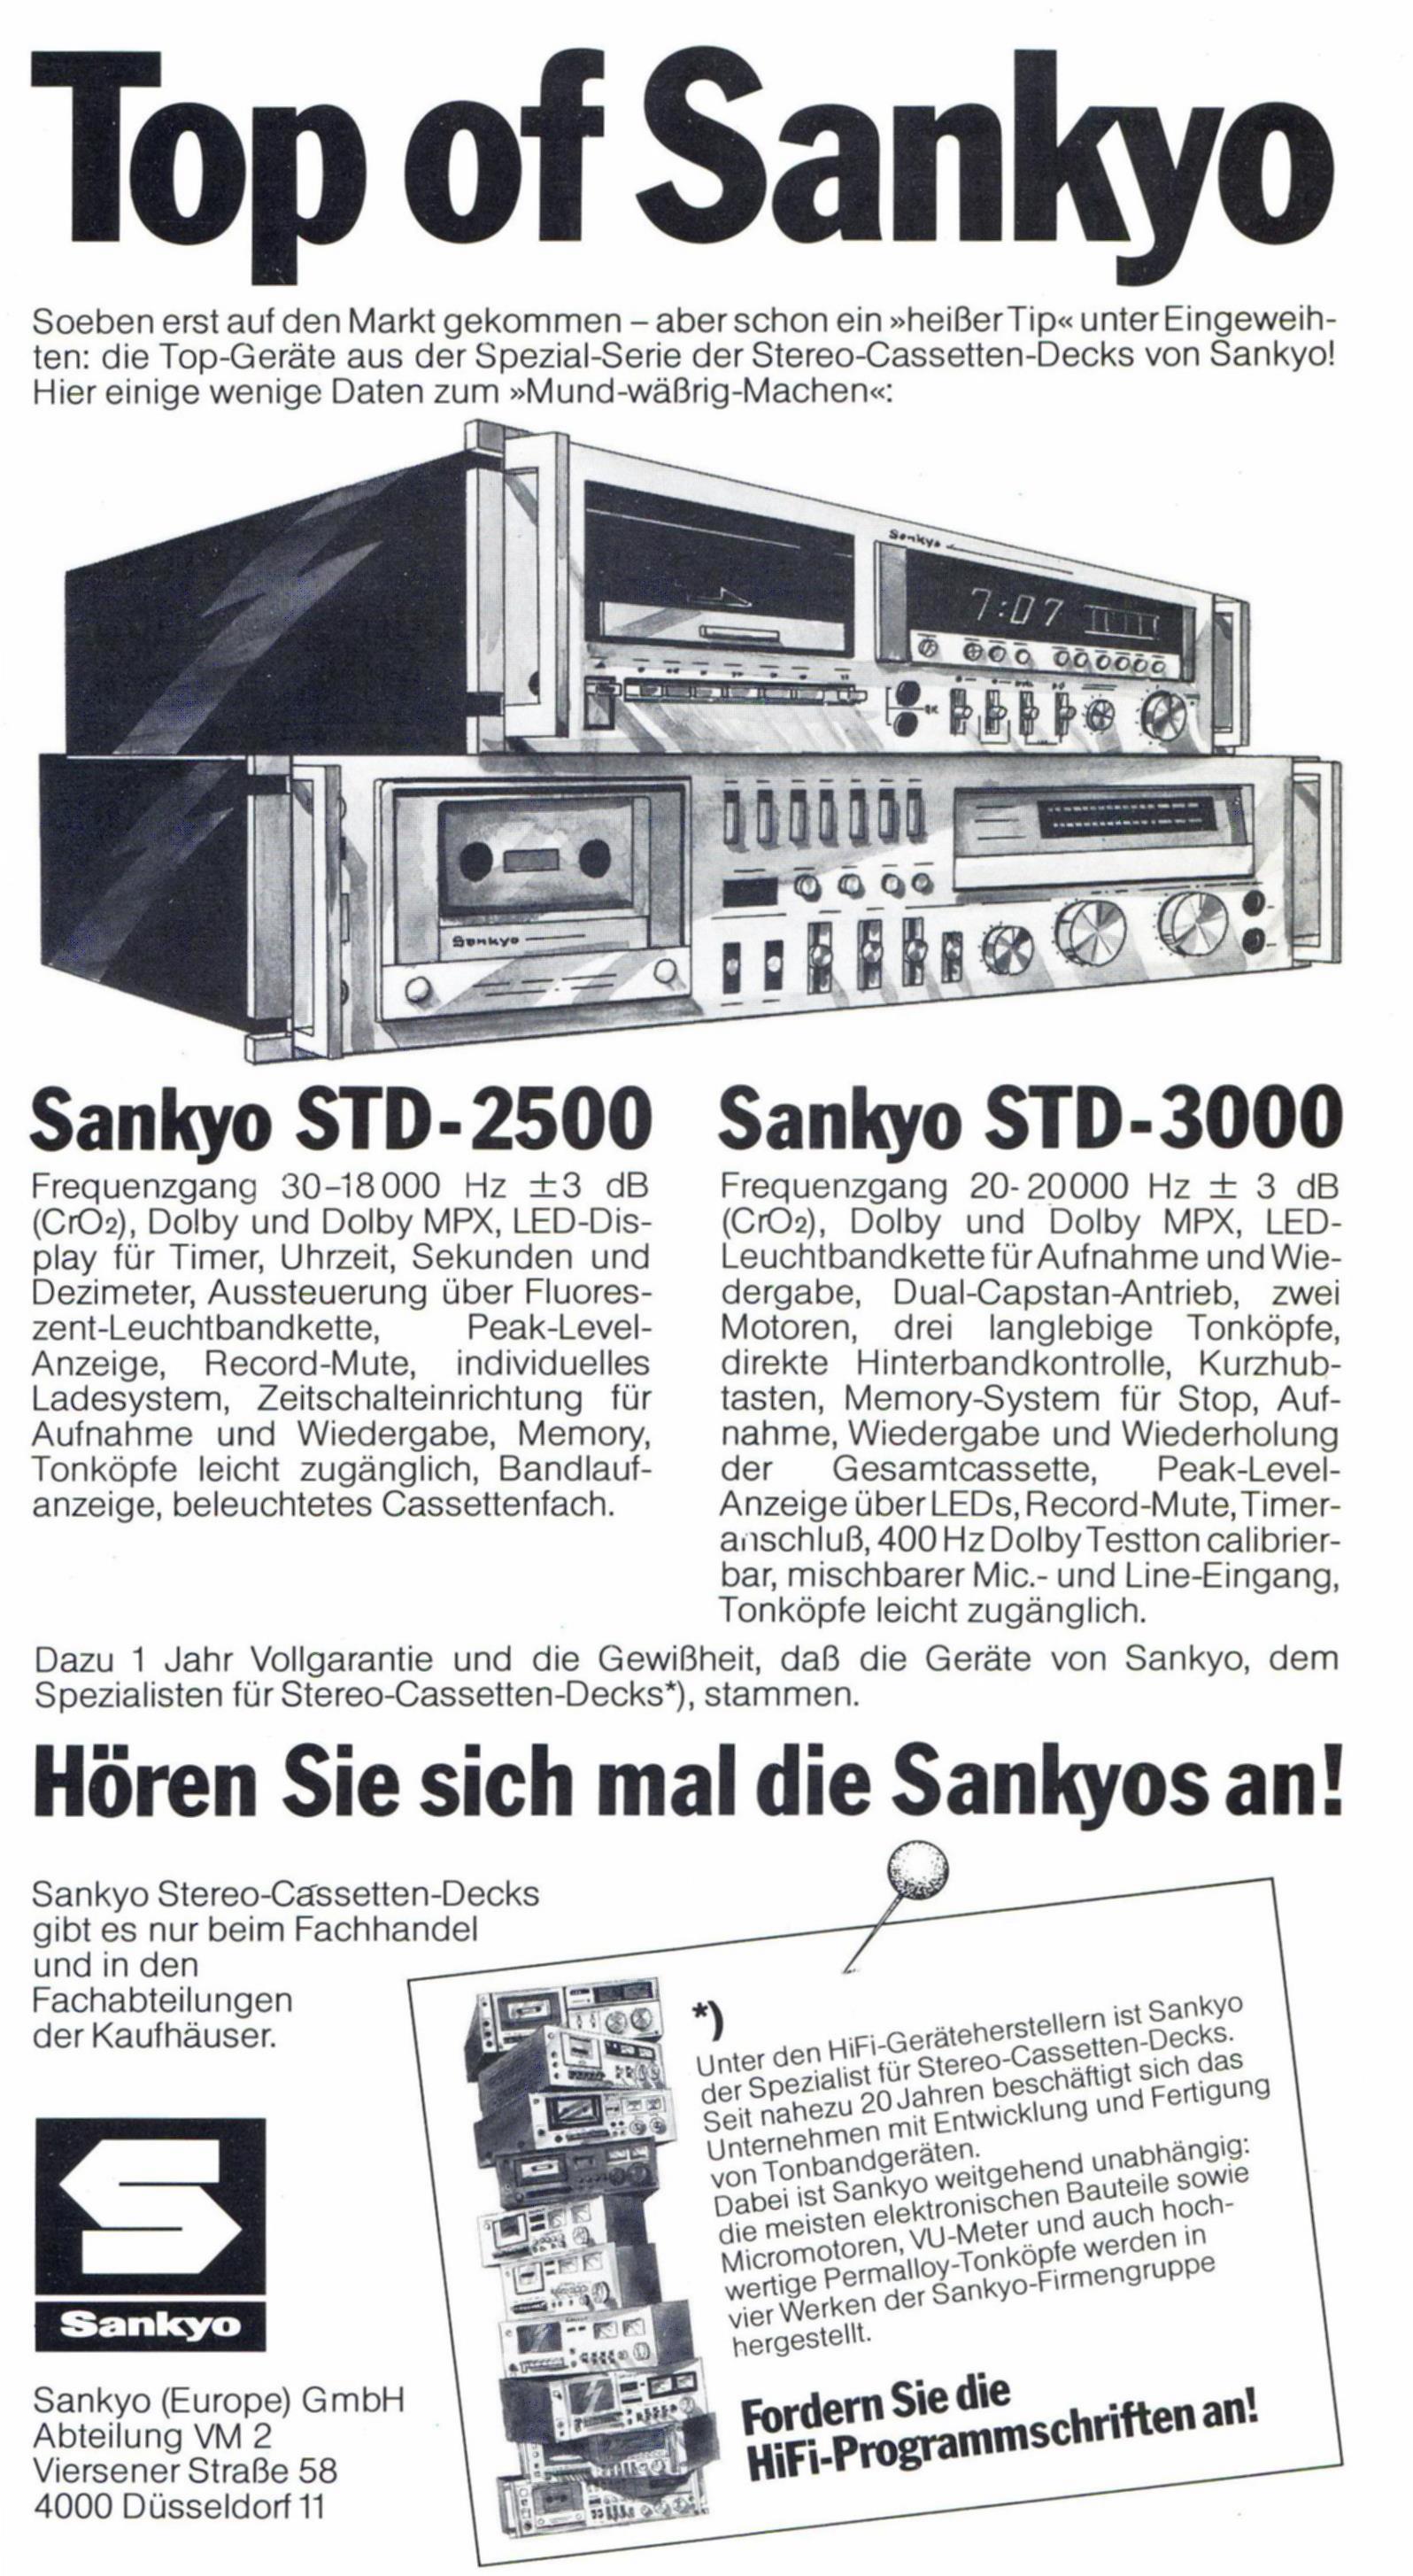 Sankyo 1979 707.jpg